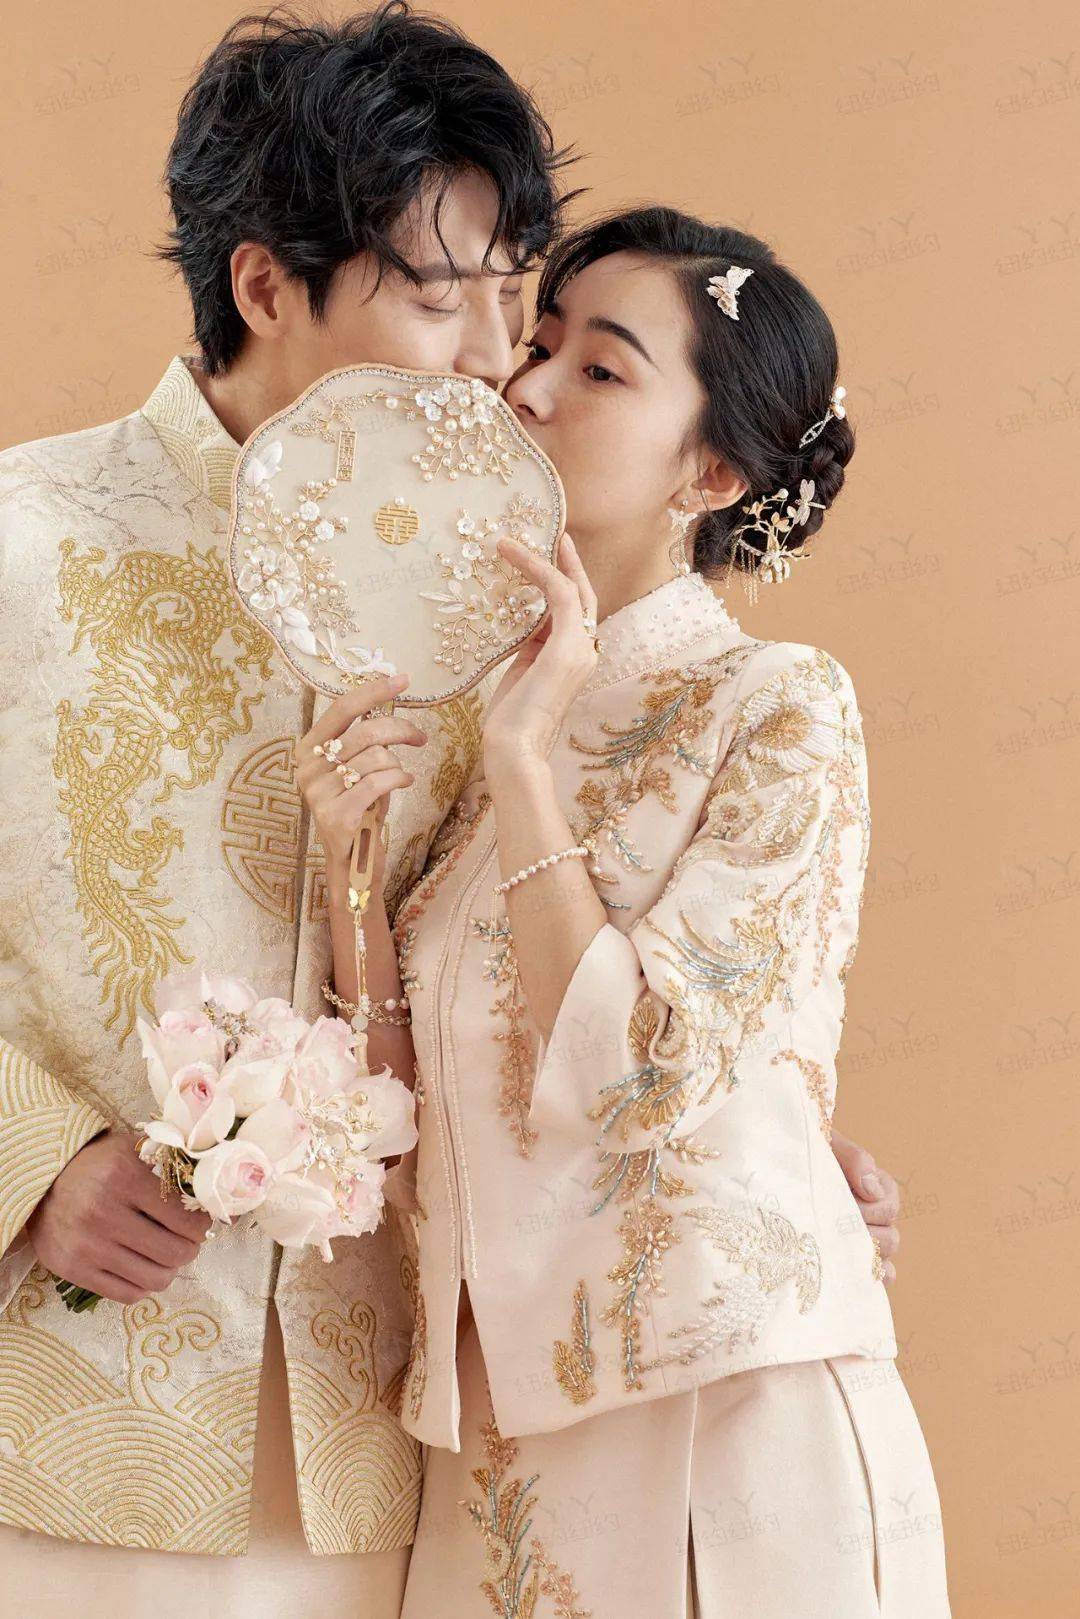 典雅俏皮的室内中式婚纱照 既有传统中国的韵味 又融合了现代的时尚风